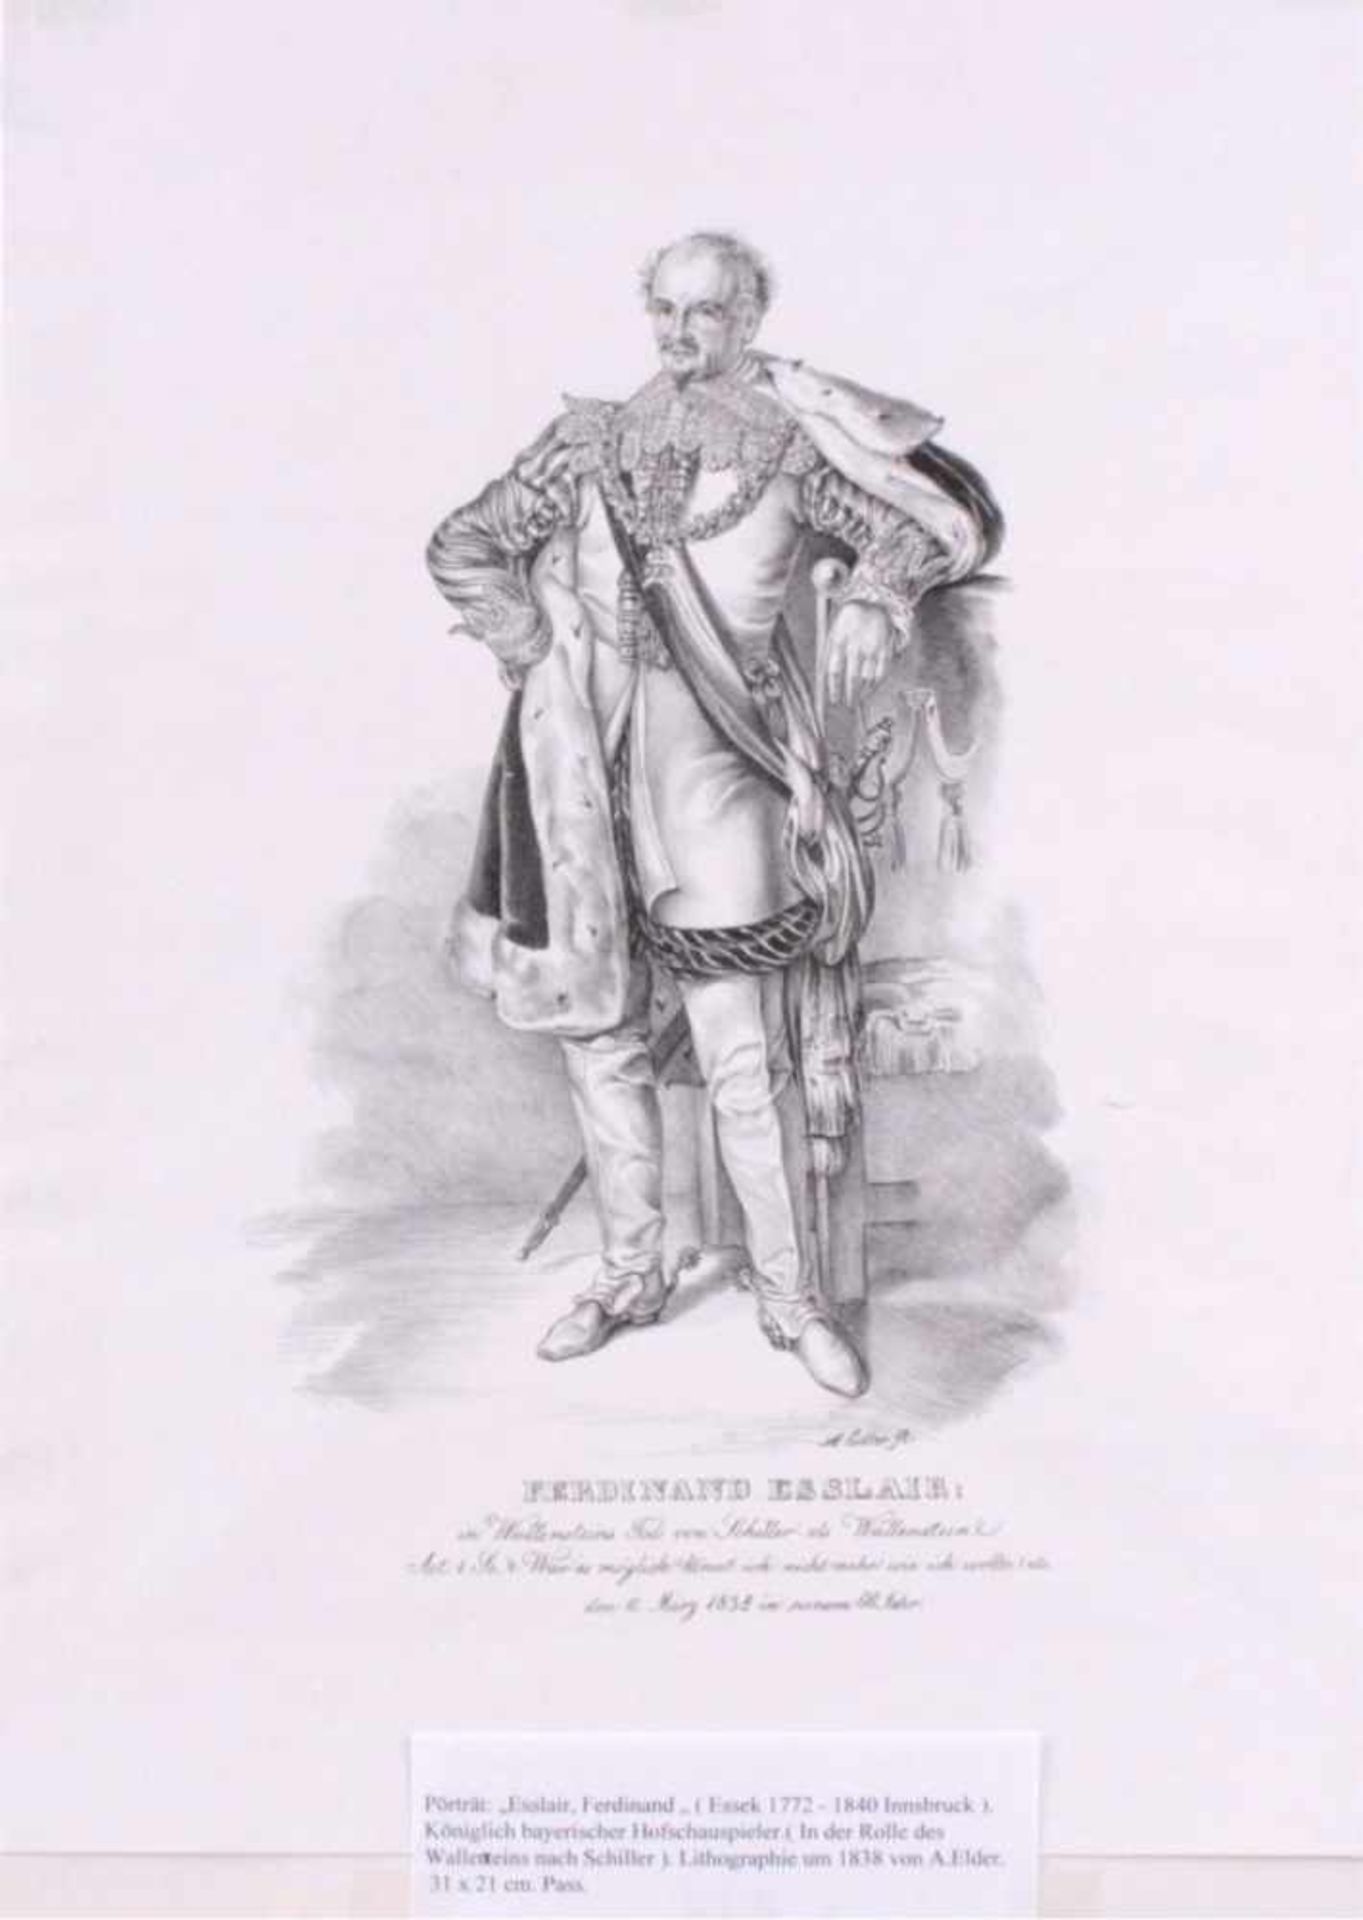 Ferdinand Esslair (Eppersdorf/Schlesien 1772-1840 Innsbruck)Porträt- Wallenstein. Königlich